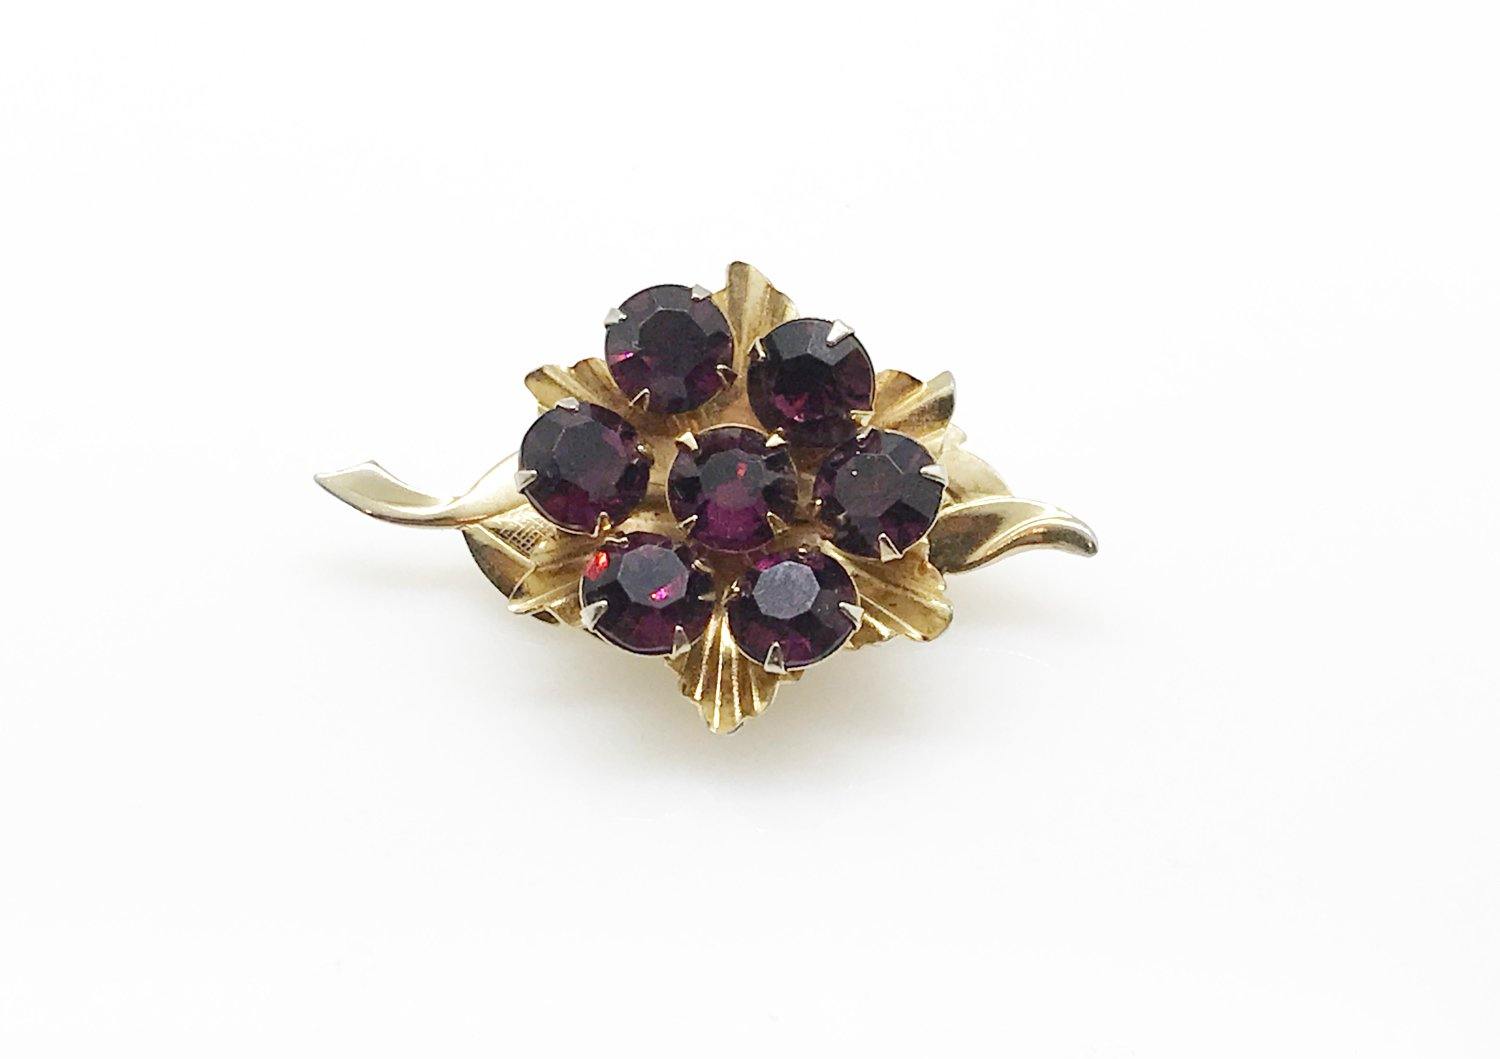 Vintage Spinning Brooch with Purple Stones - Lamoree’s Vintage